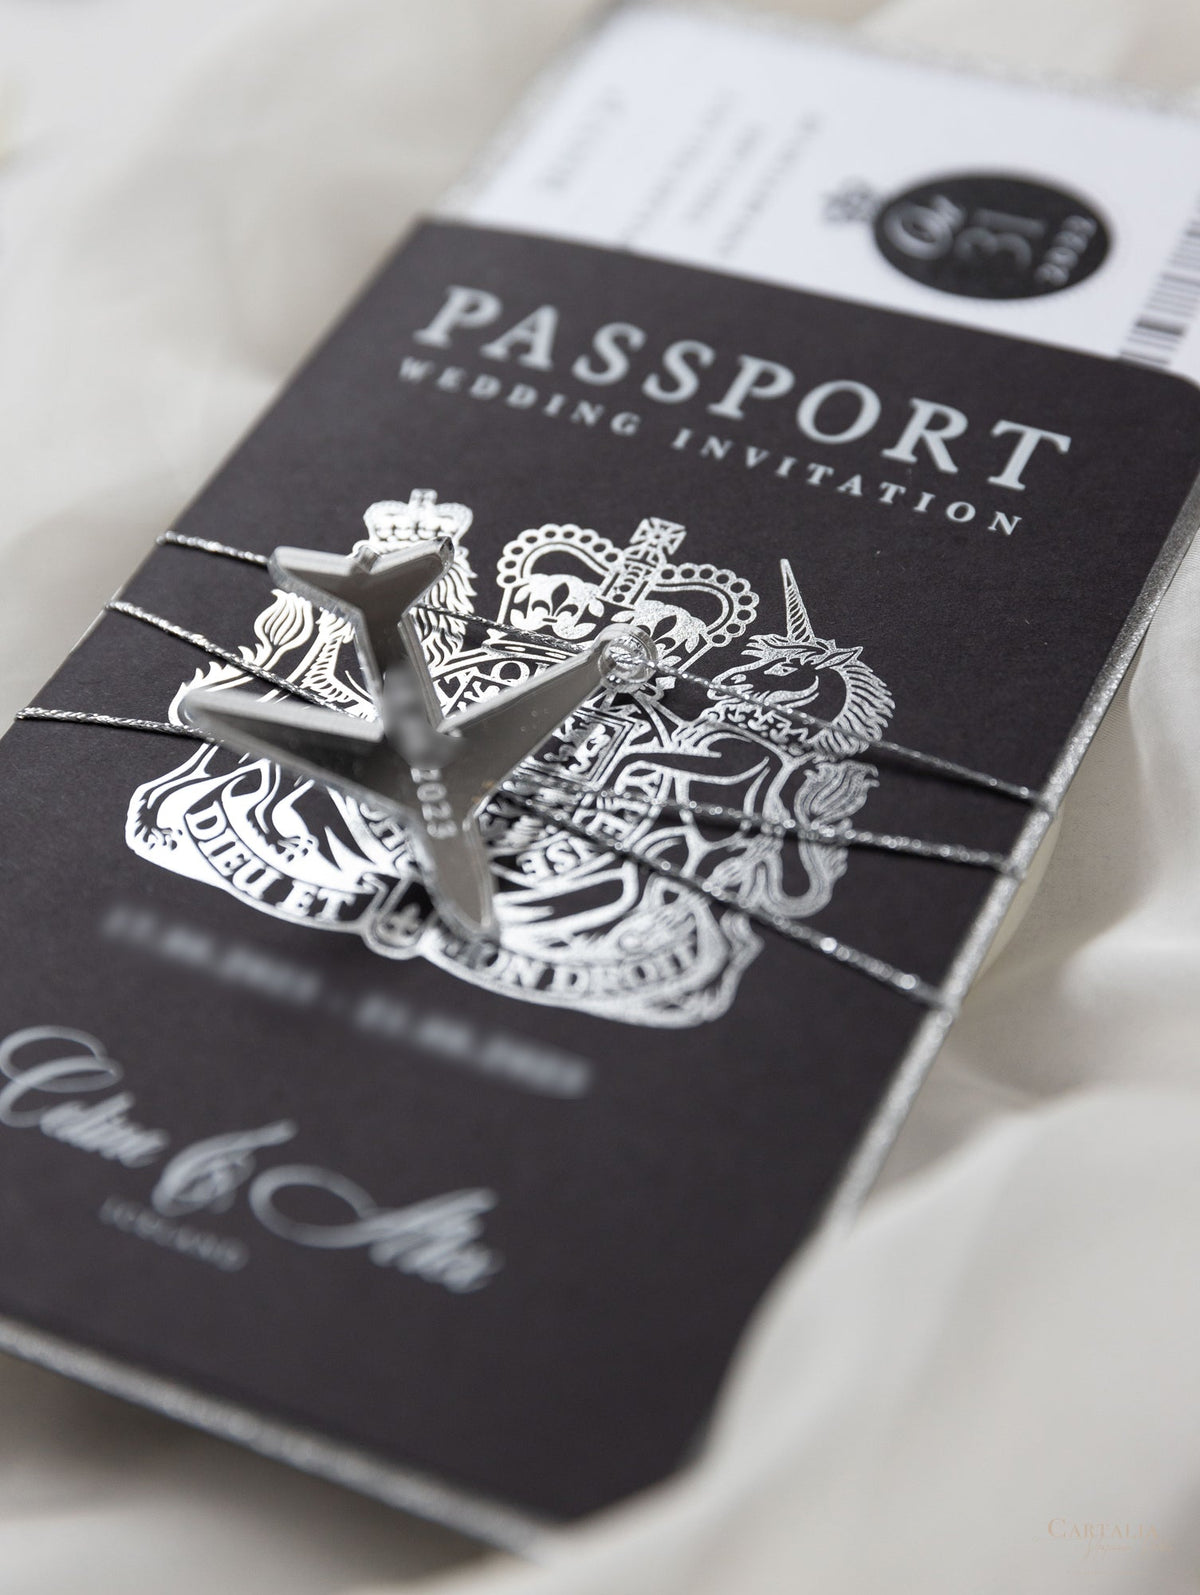 Suite de invitación de boda con pasaporte de lujo negro con purpurina plateada y lámina de plata real